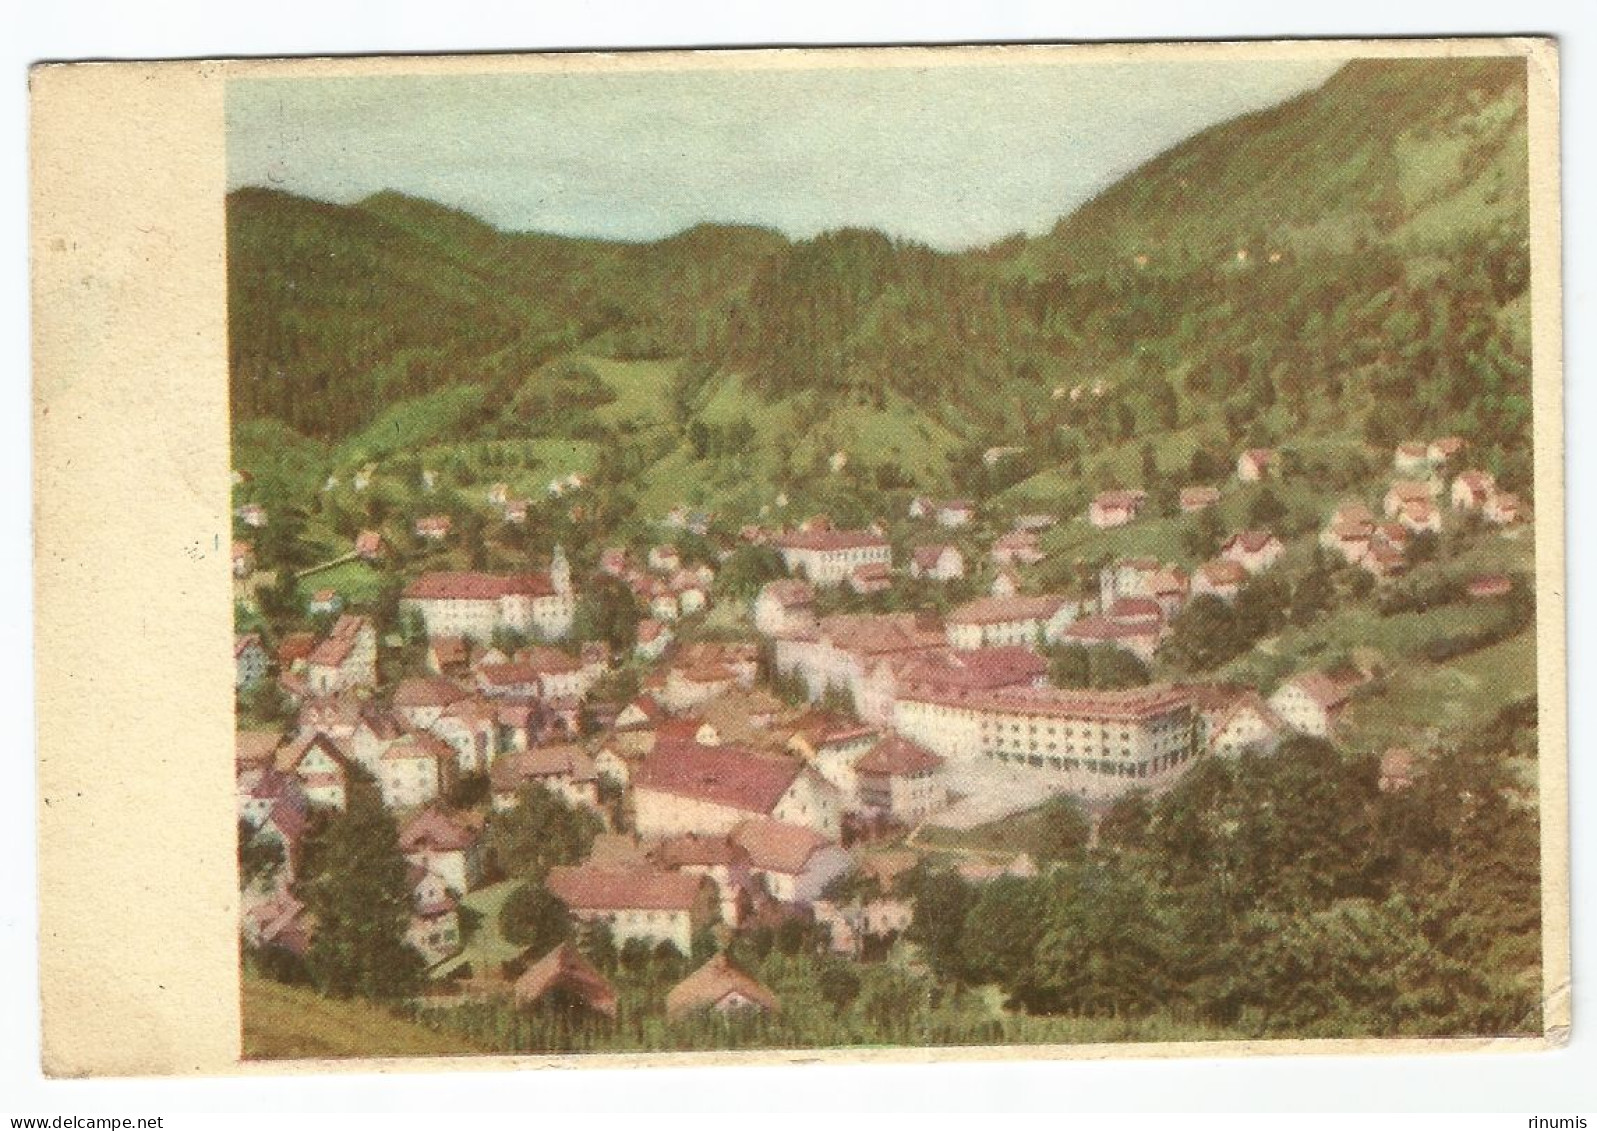 Idrija 1959 Used - Slovenia